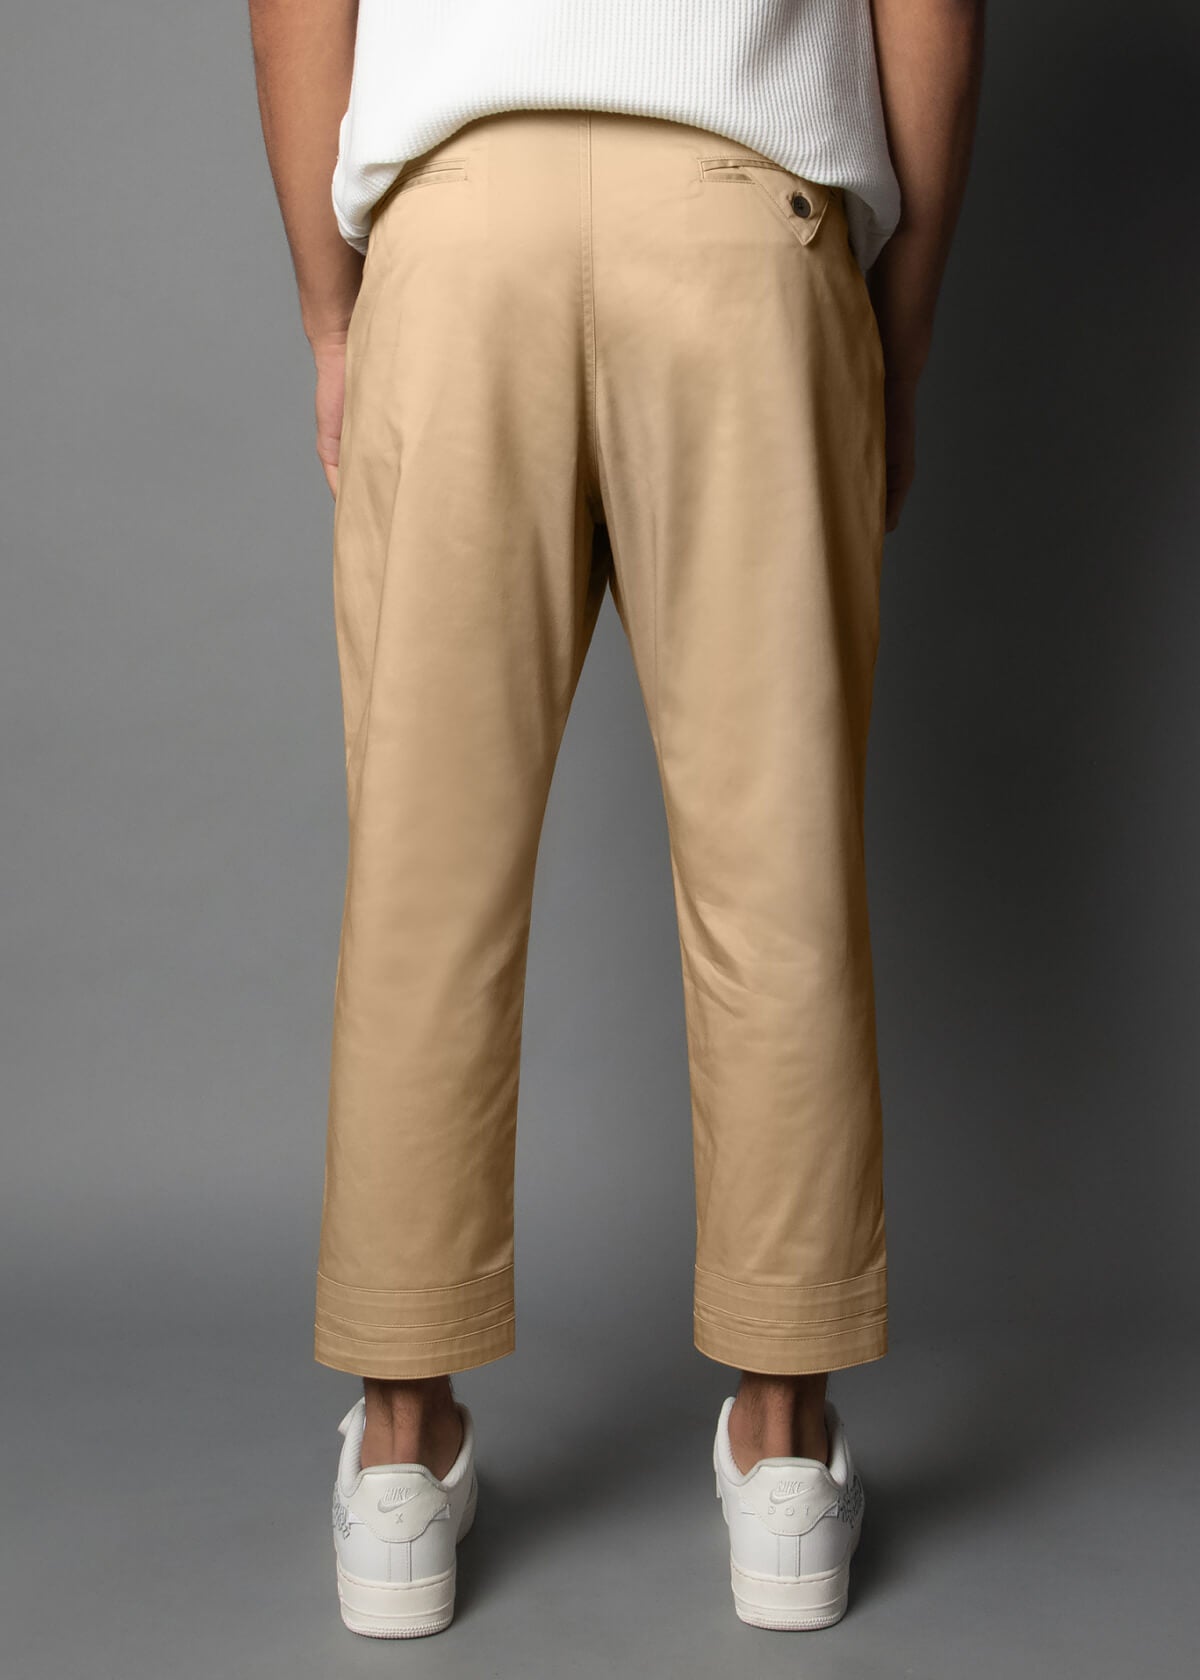 soft cotton pants for men in a light khaki color